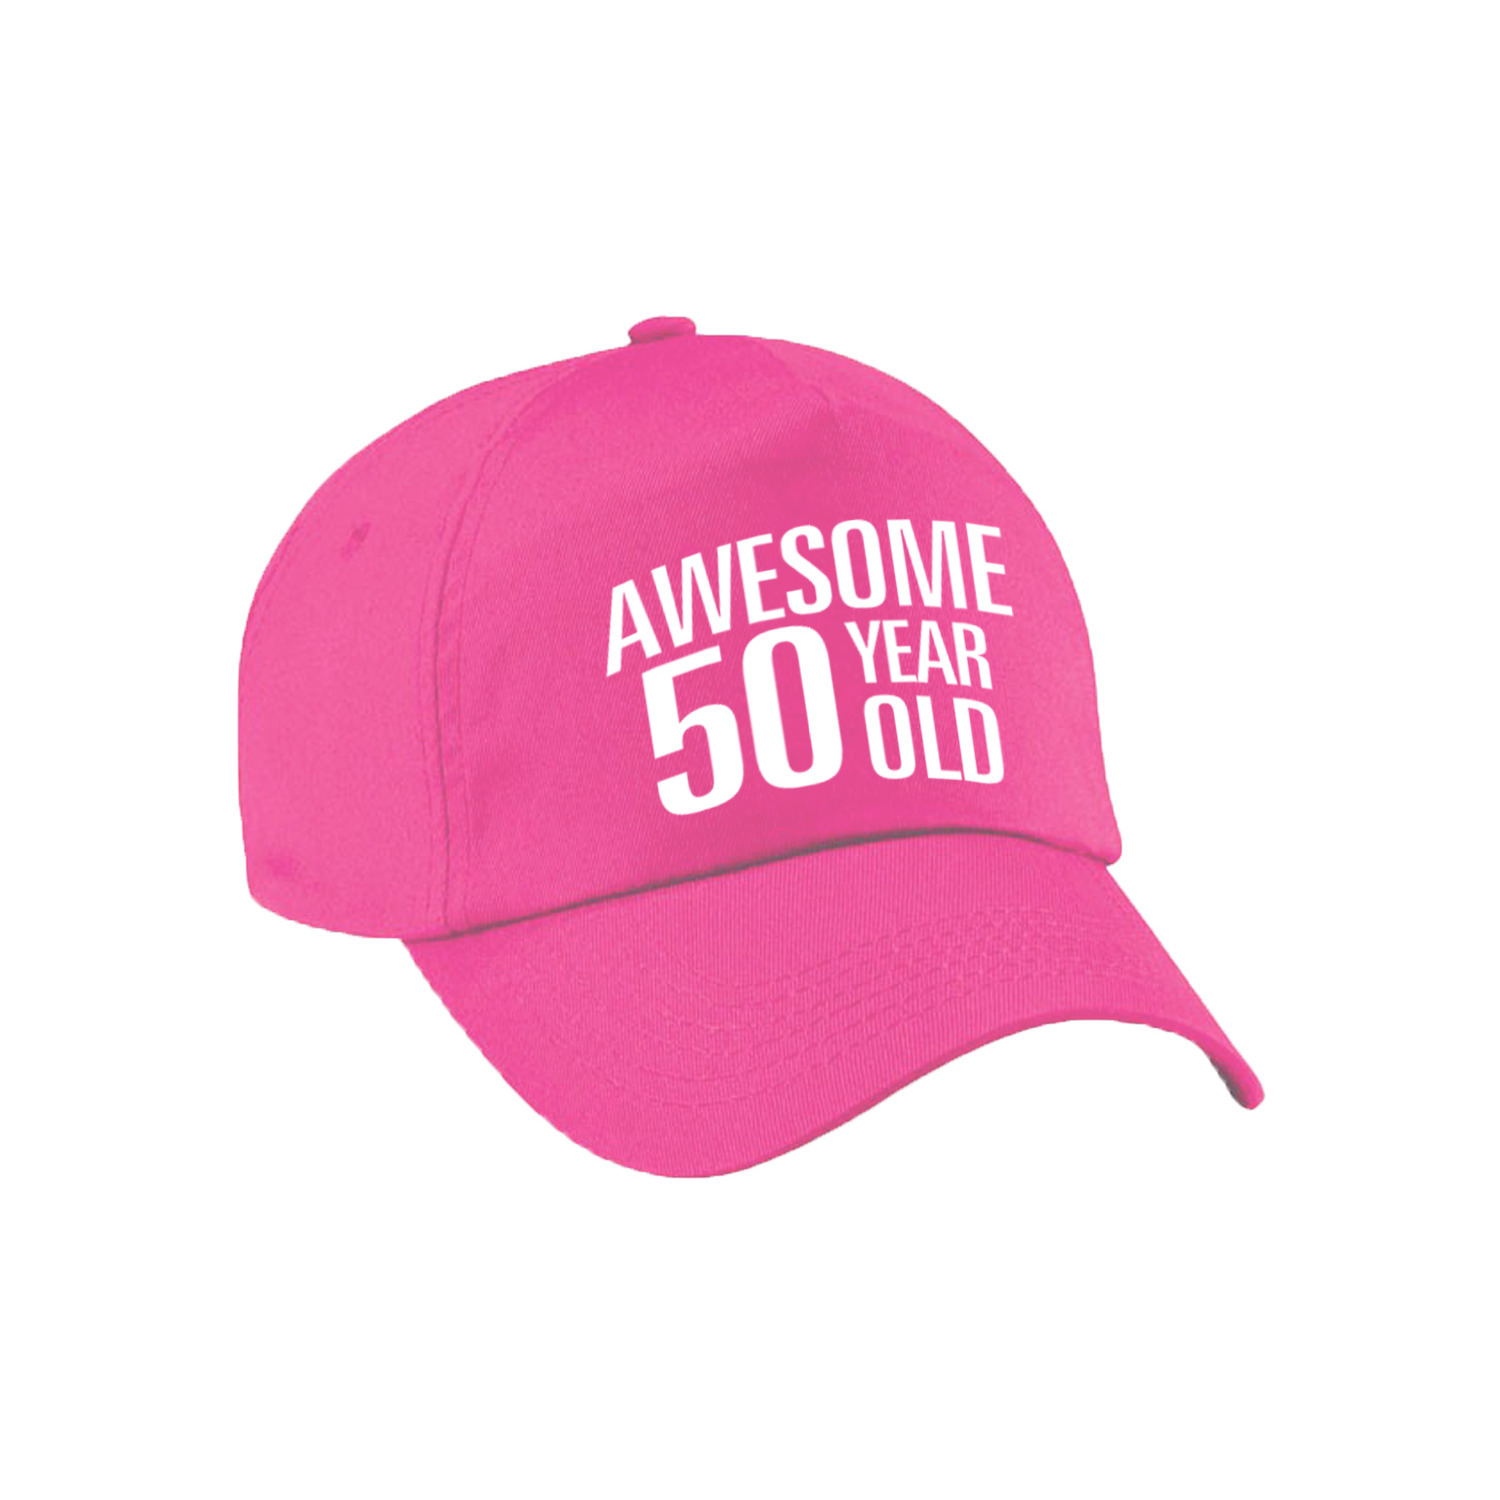 Awesome 50 year old verjaardag pet-cap roze voor dames en heren